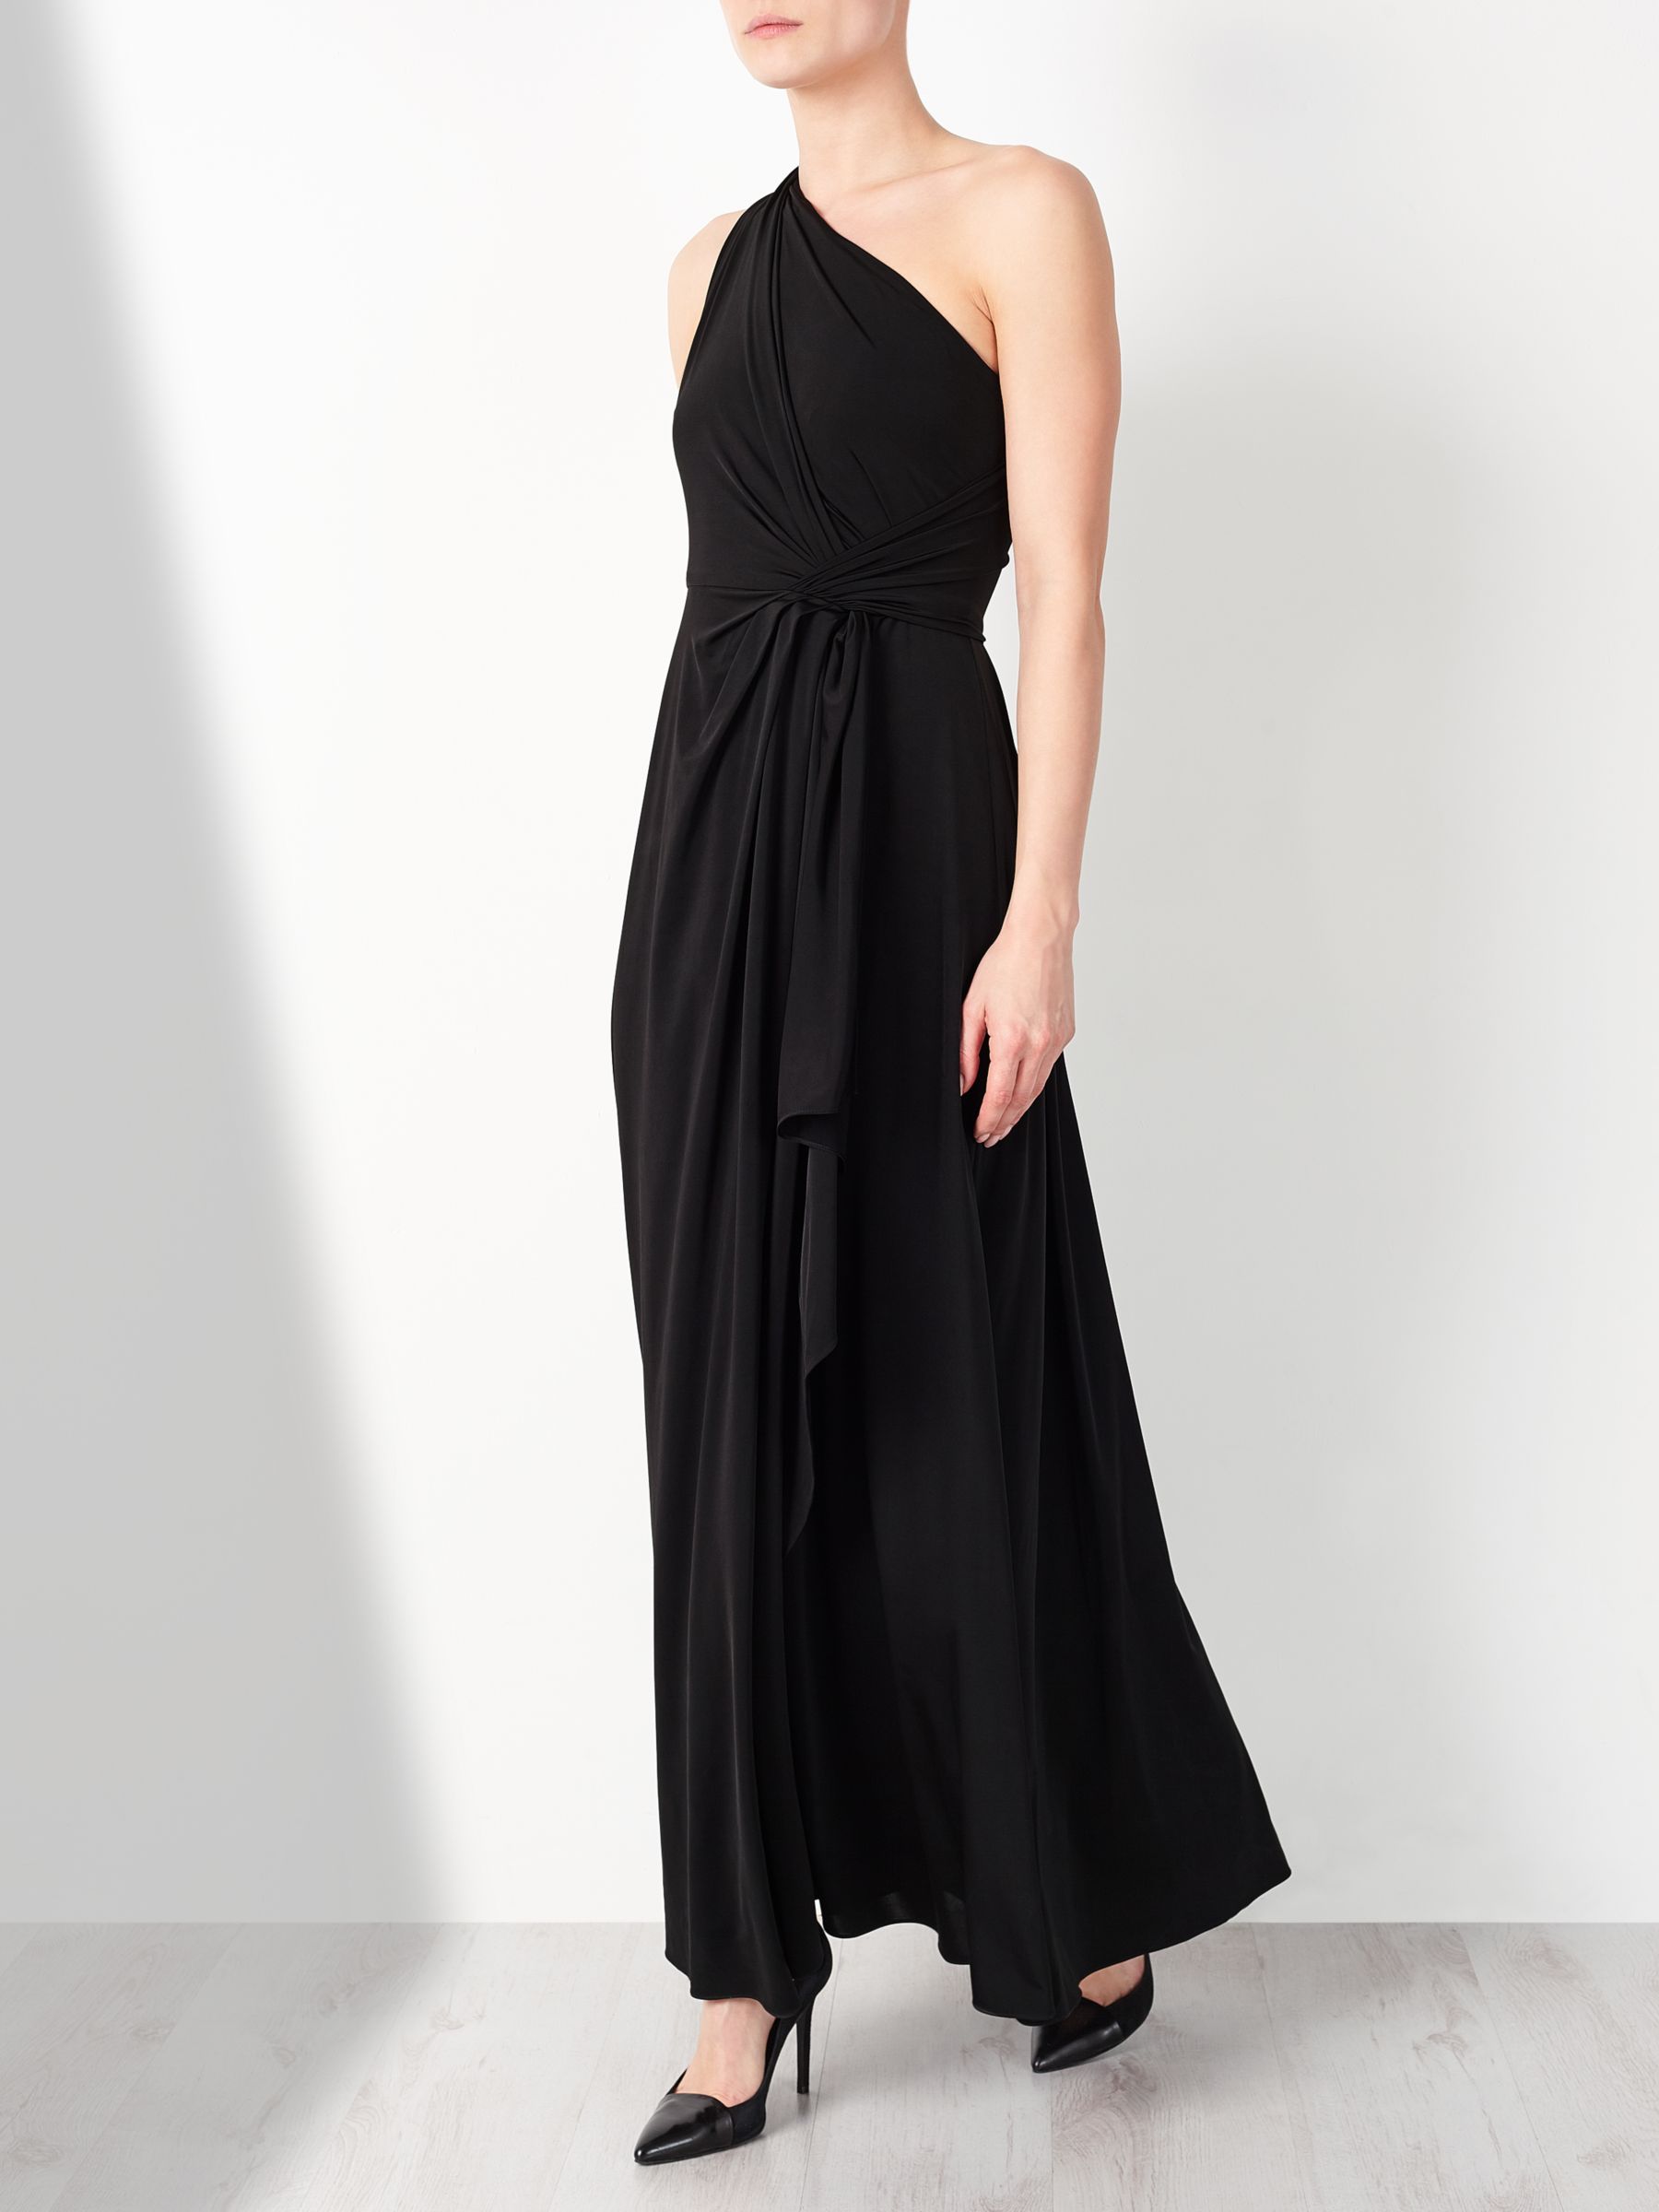 John Lewis & Partners One Shoulder Dress, Black, 12